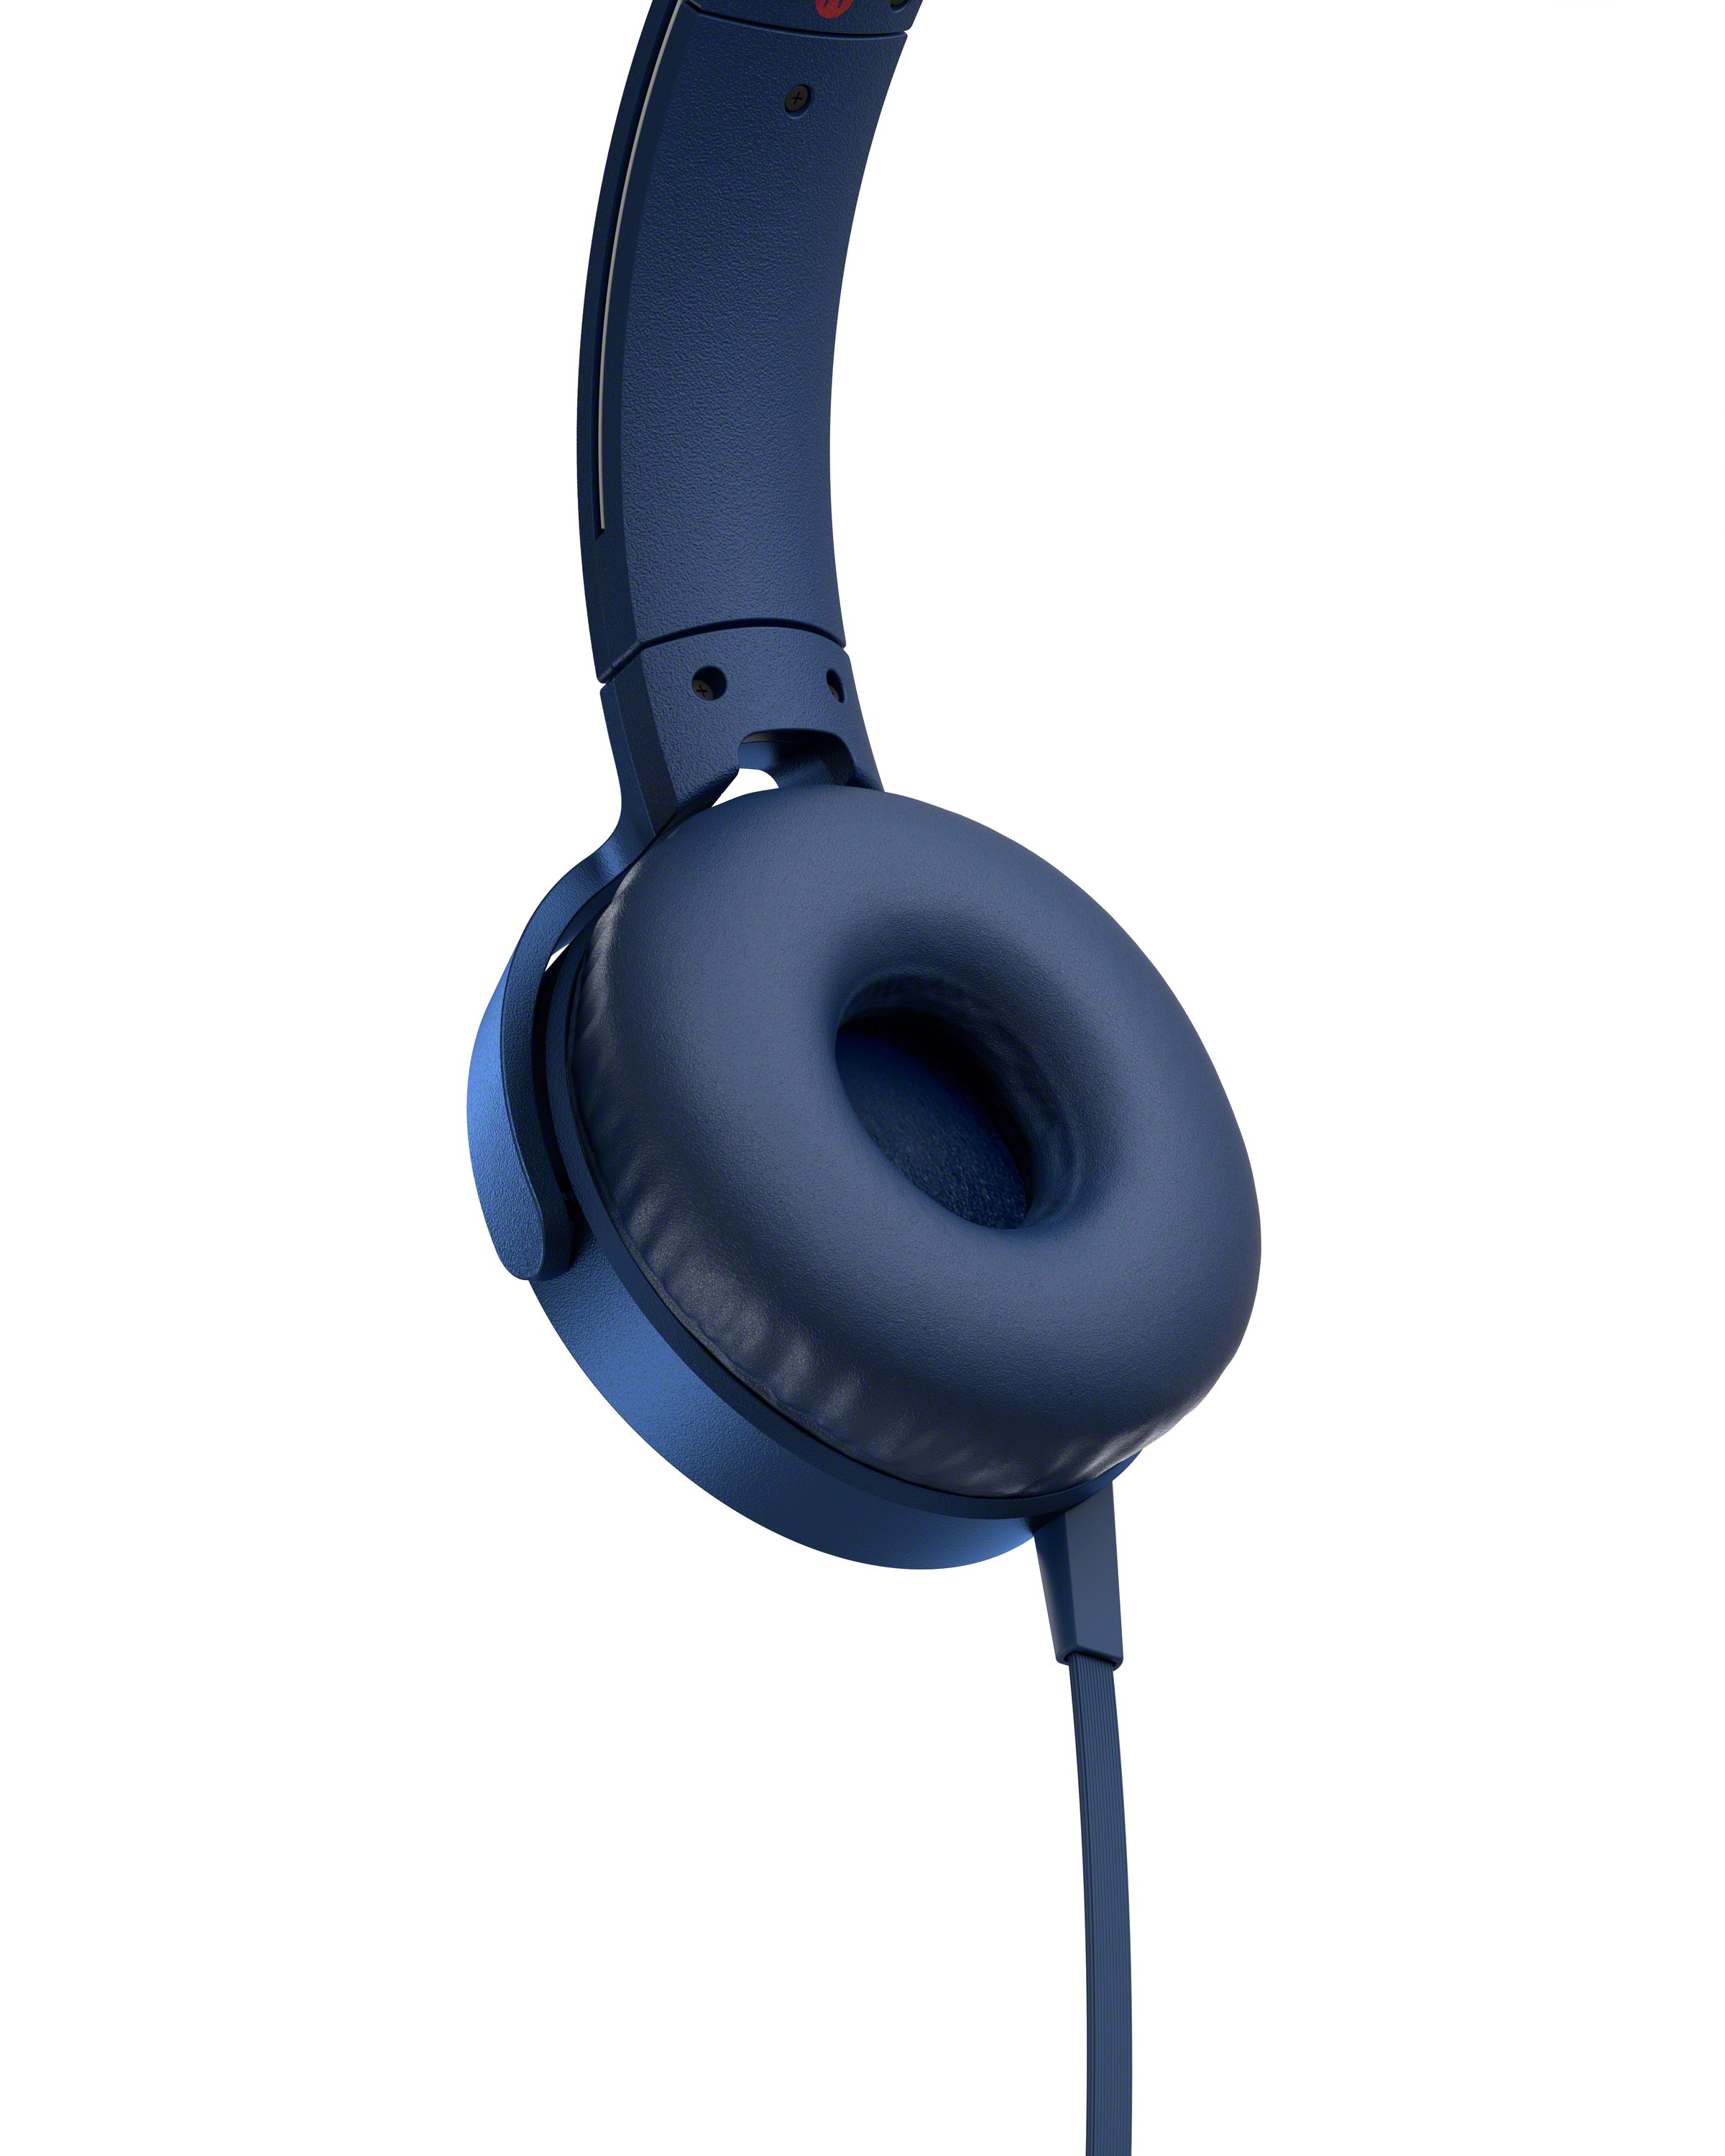 SONY MDR-XB550AP, On-ear Blau Kopfhörer